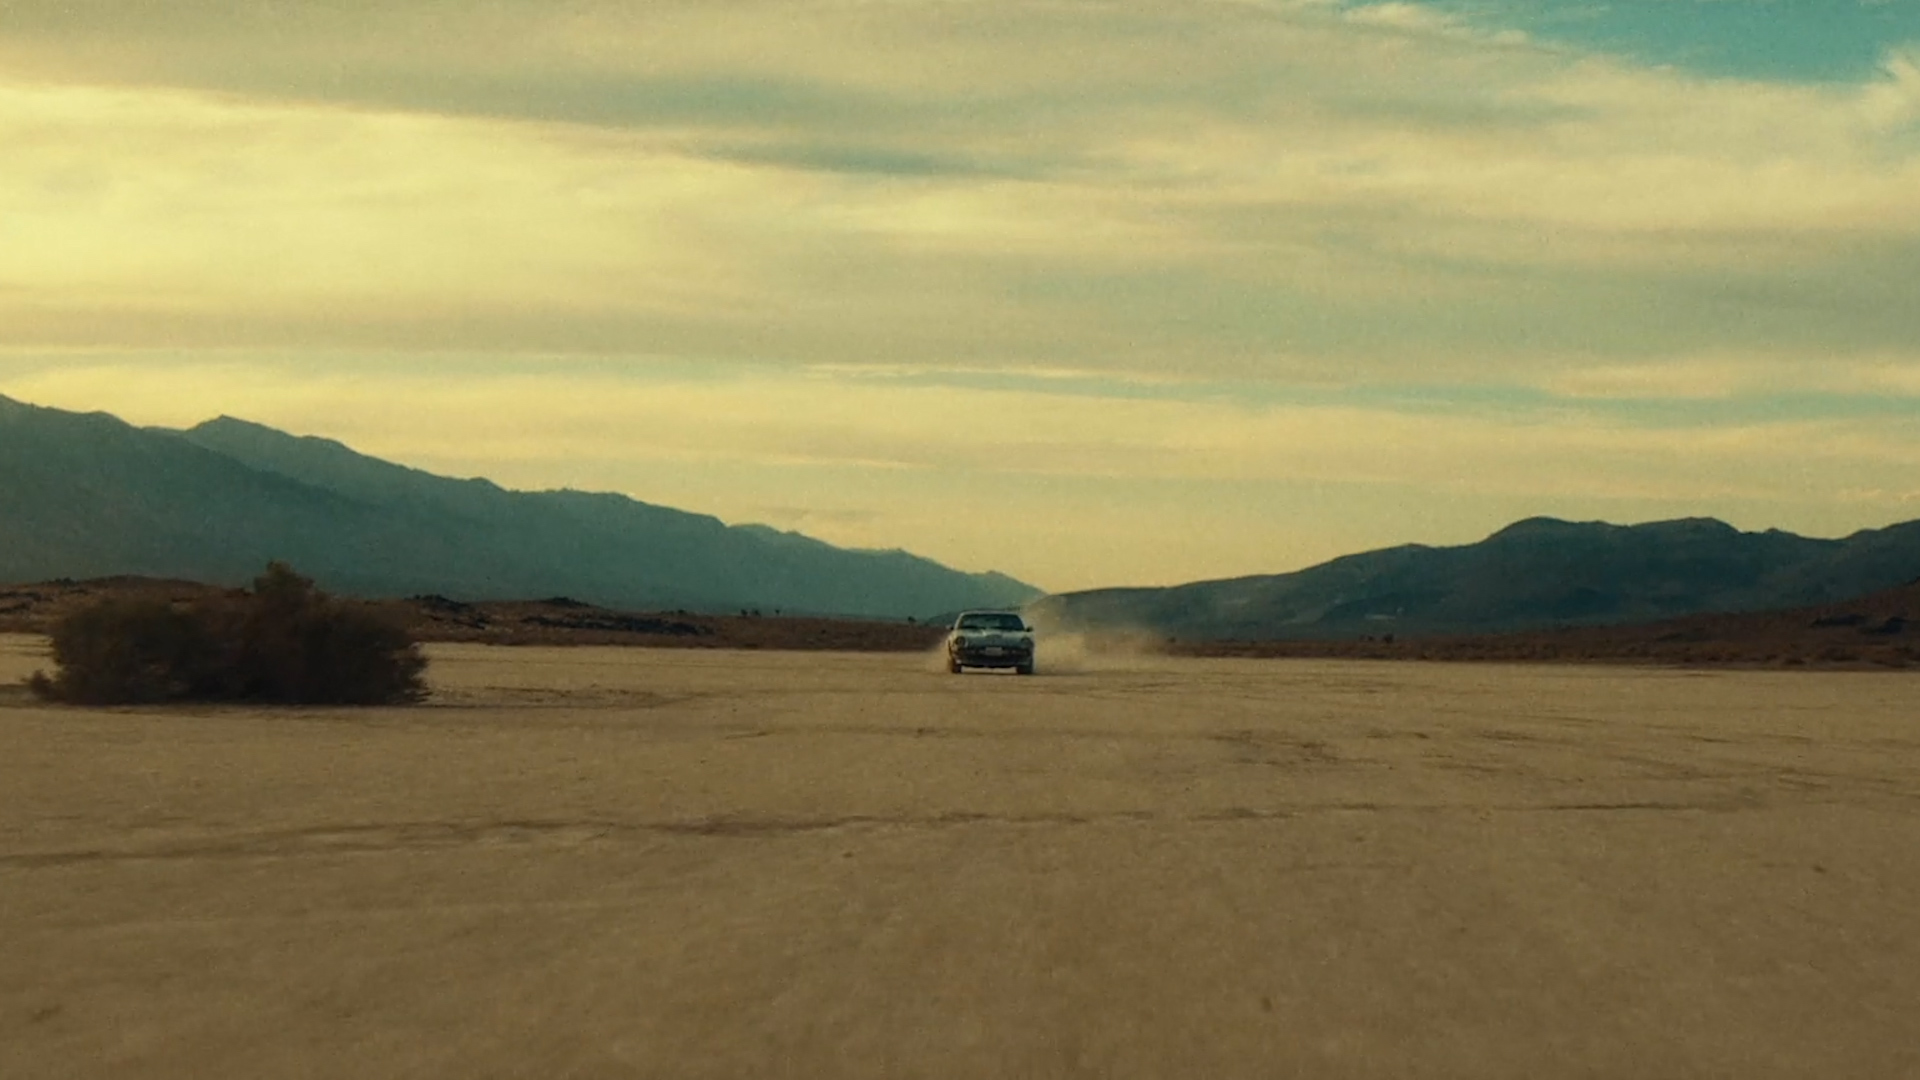 A car drives through the desert.